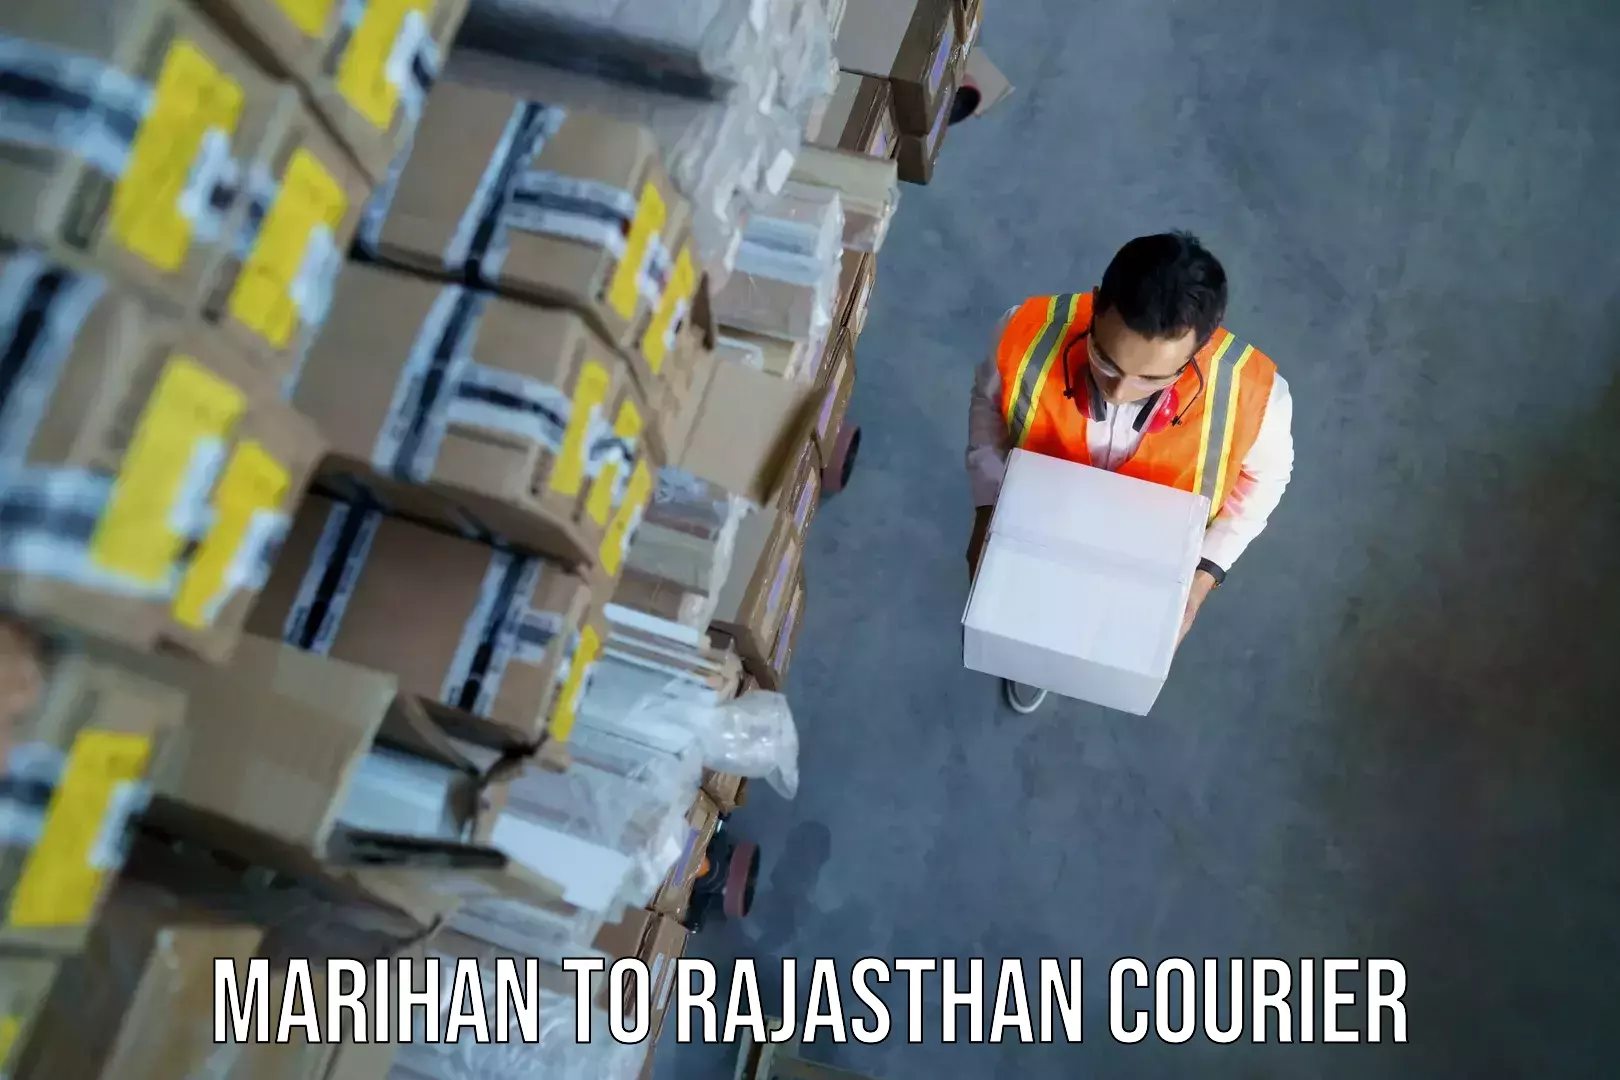 Baggage shipping experts Marihan to Rajasthan